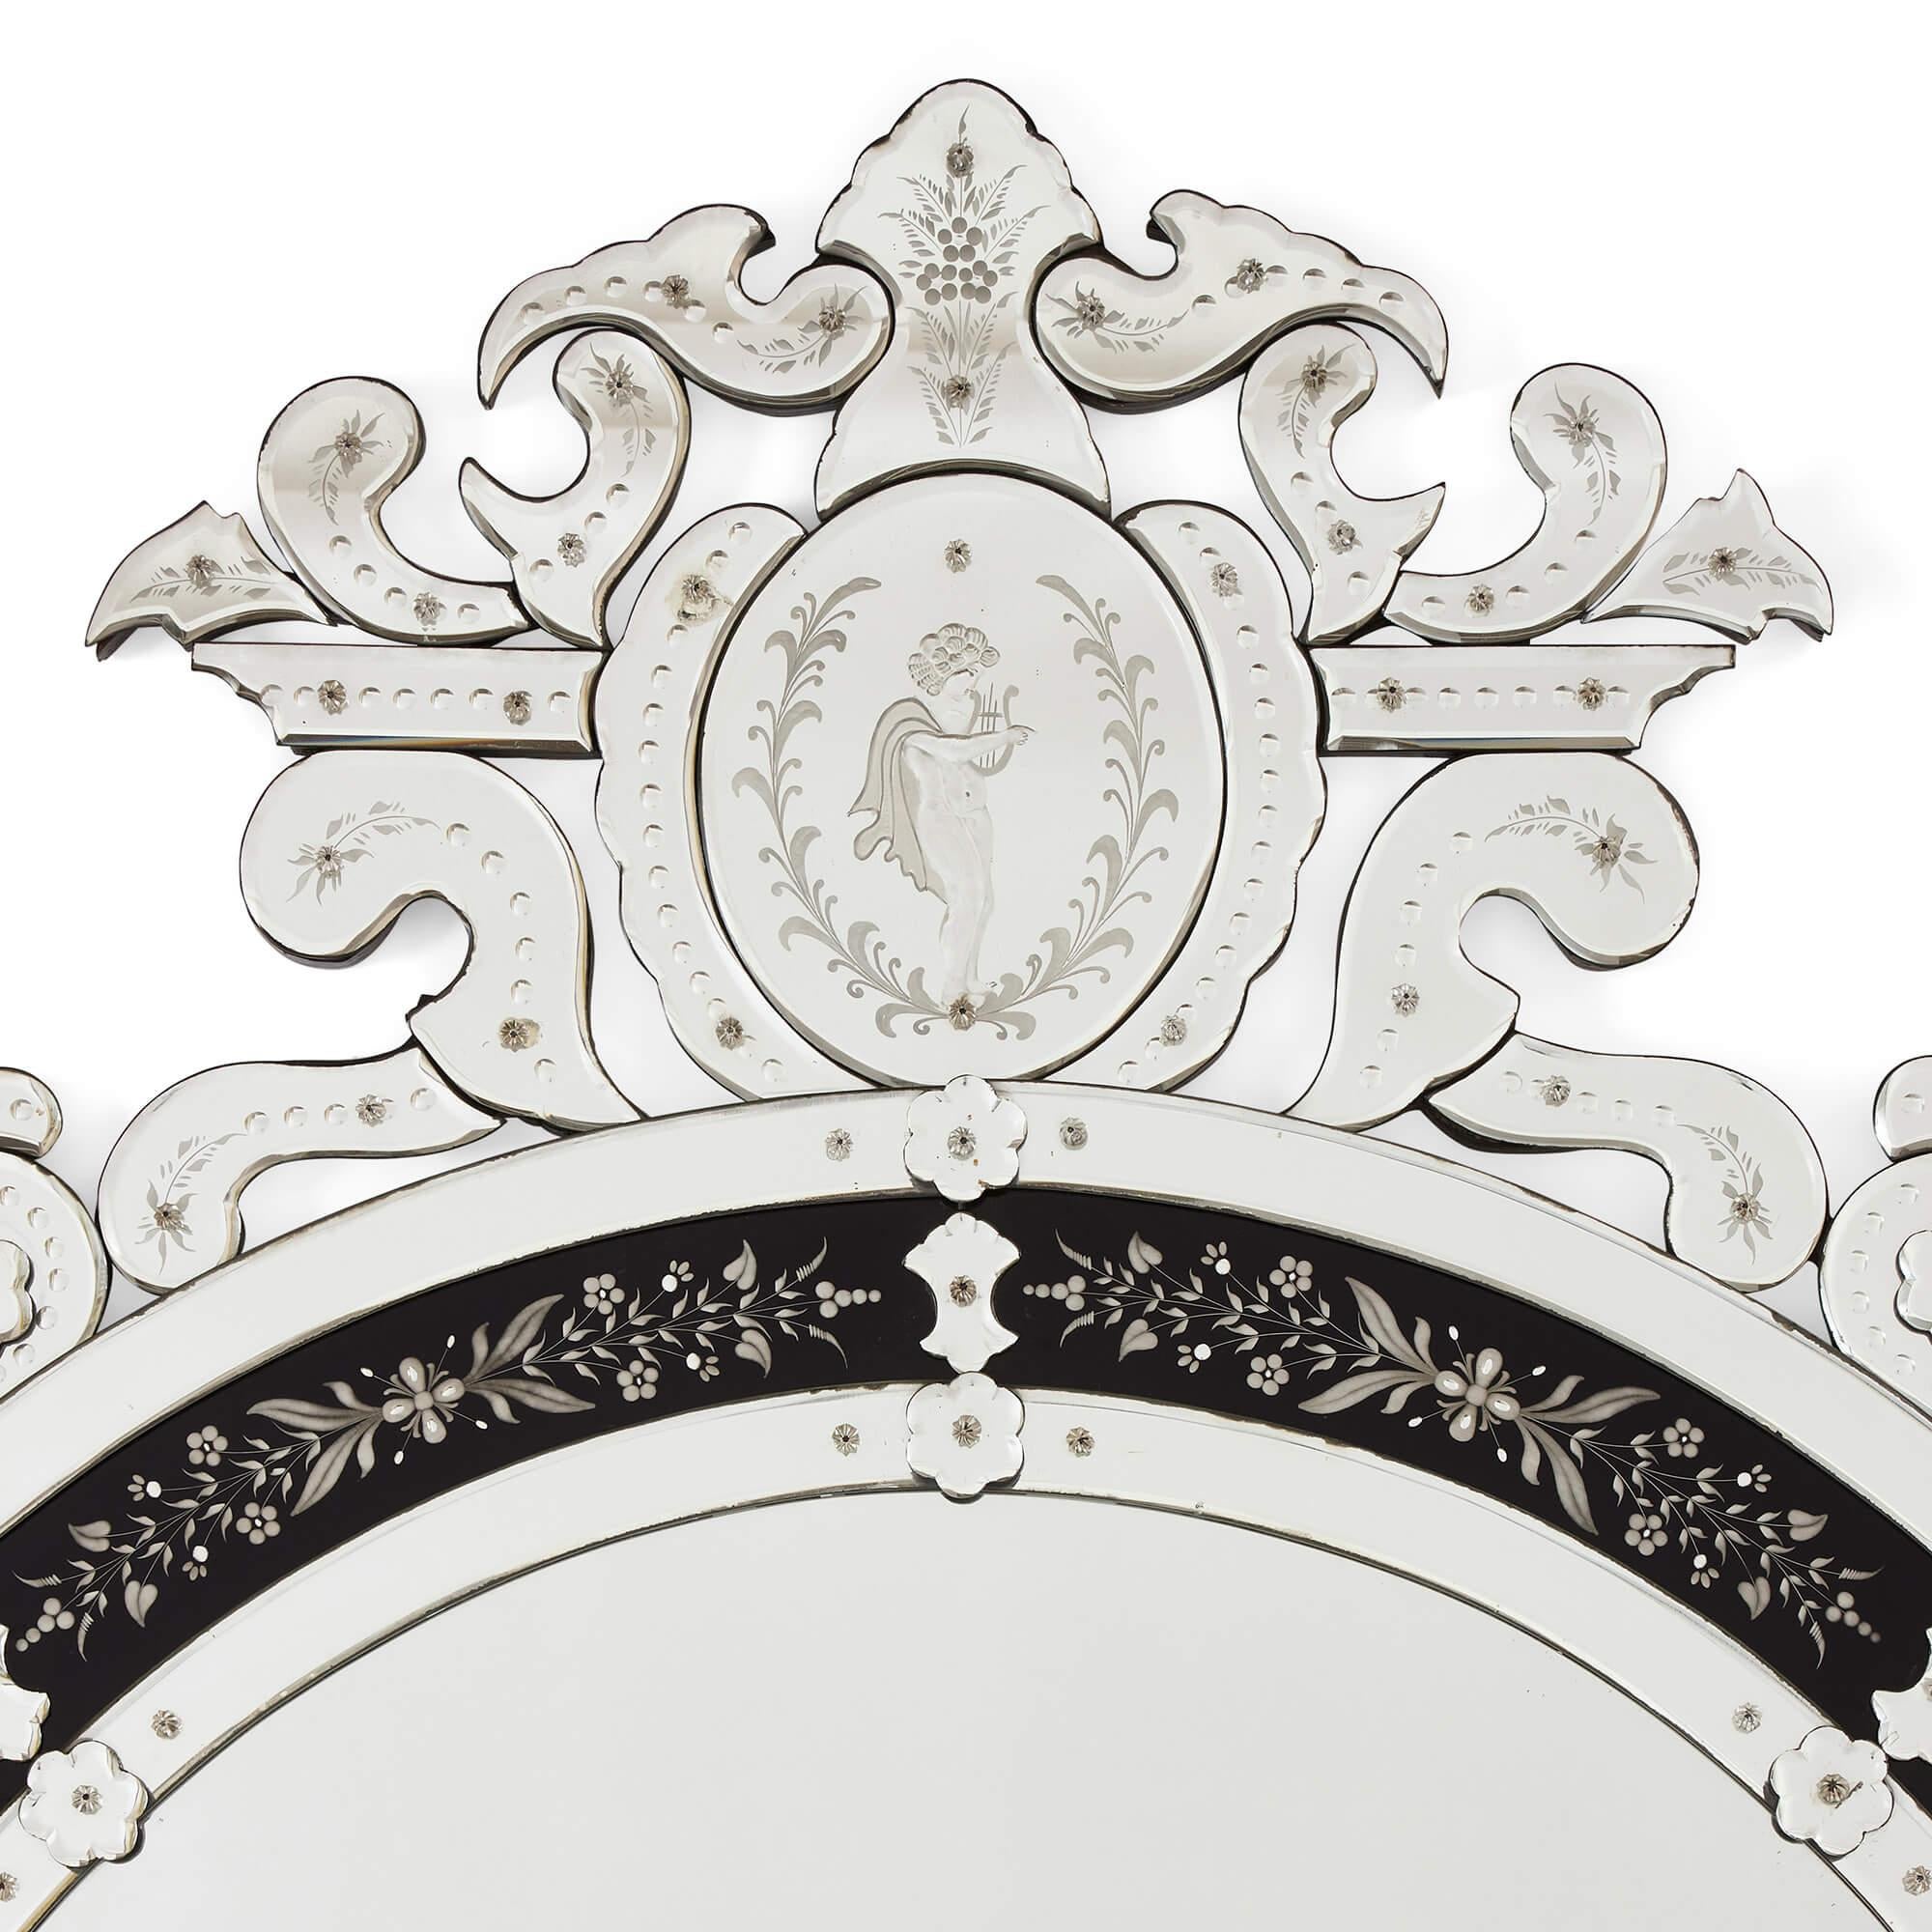 Très grand miroir en verre vénitien avec décor gravé
Italien, 20e siècle
Hauteur 220 cm, largeur 124 cm, profondeur 4 cm

Ce miroir monumental en verre vénitien présente des détails impressionnants à la fois sur la crête et sur la queue qui